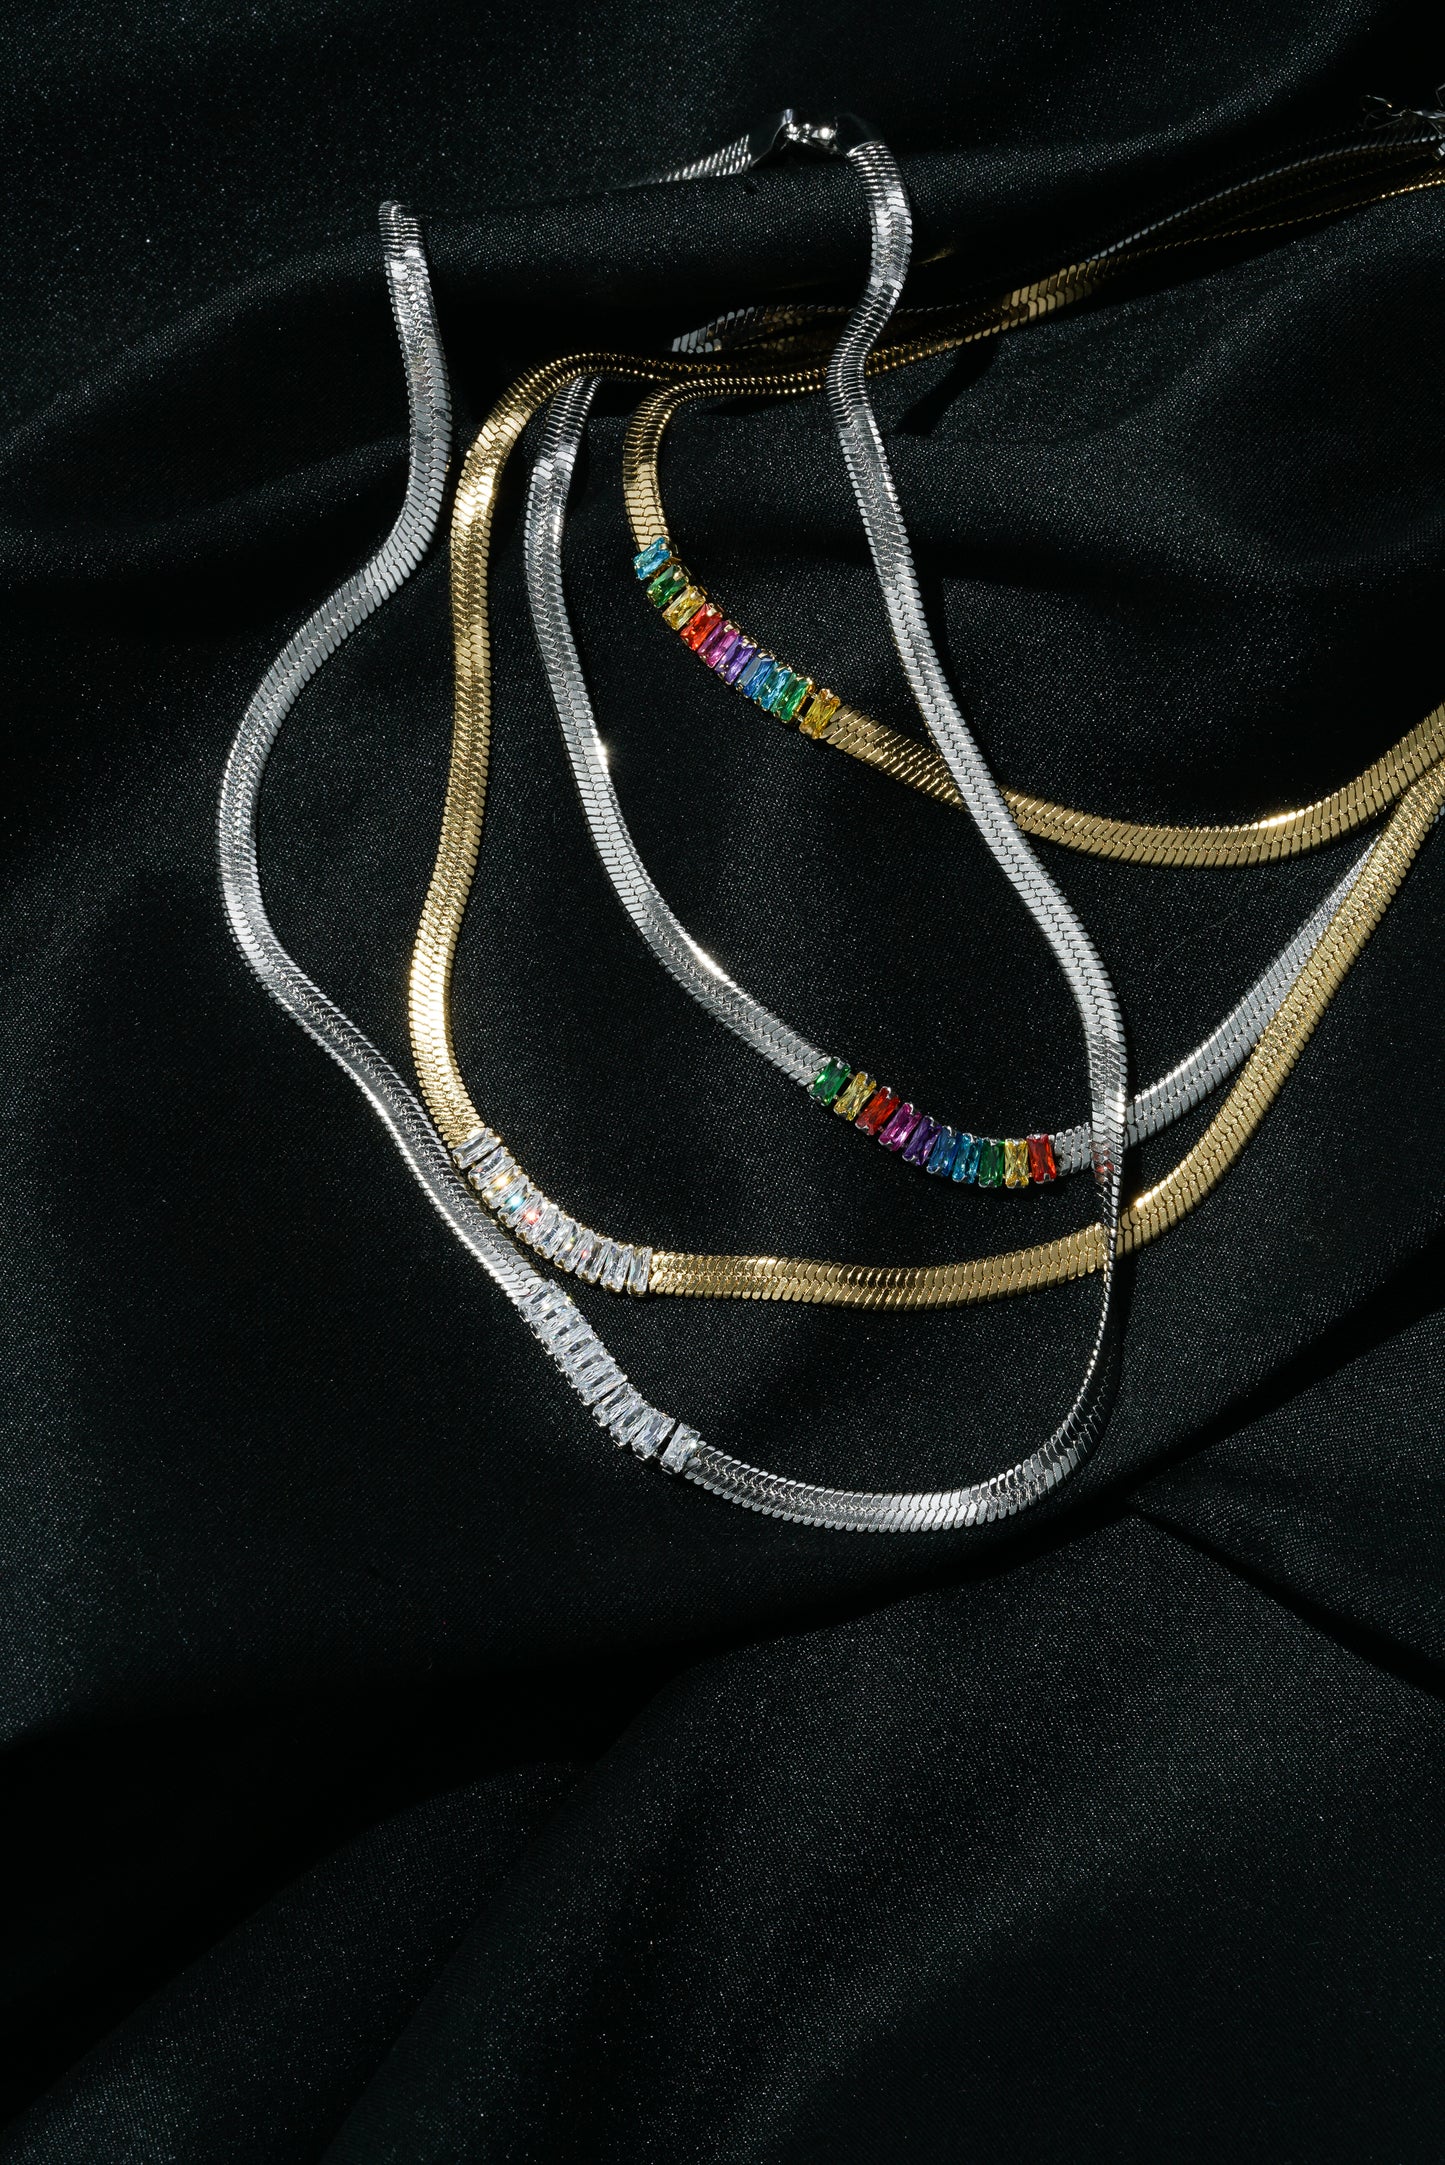 Diamante Herringbone Chain